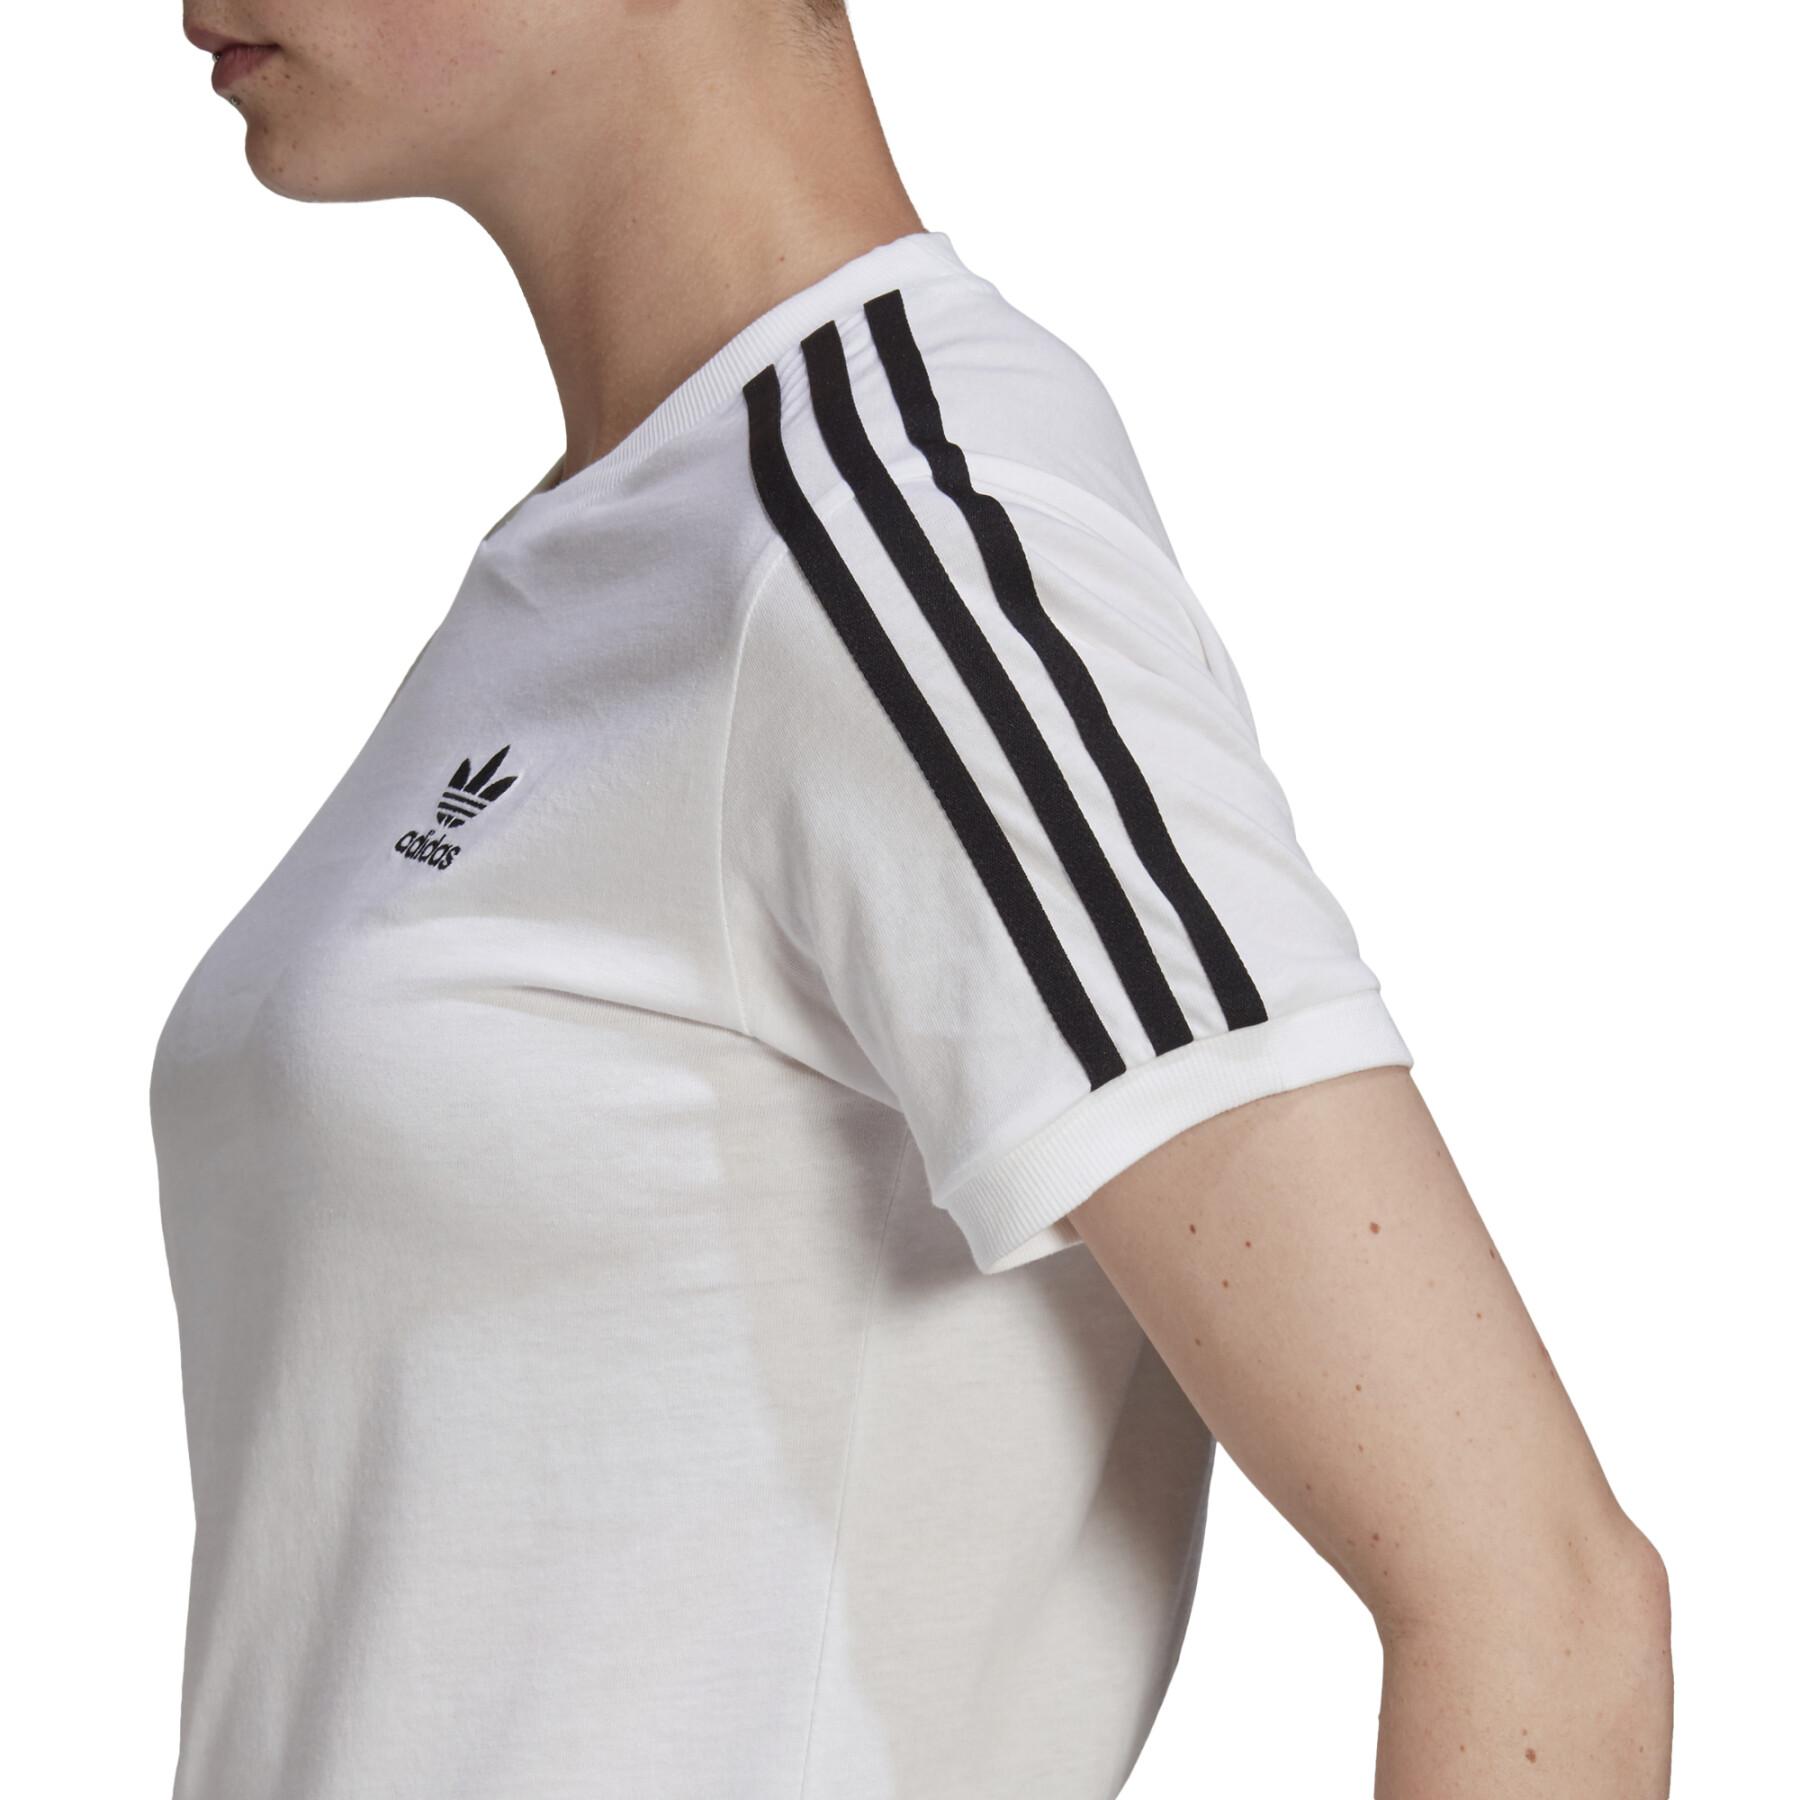 Camiseta de mujer adidas Classics 3-Stripes